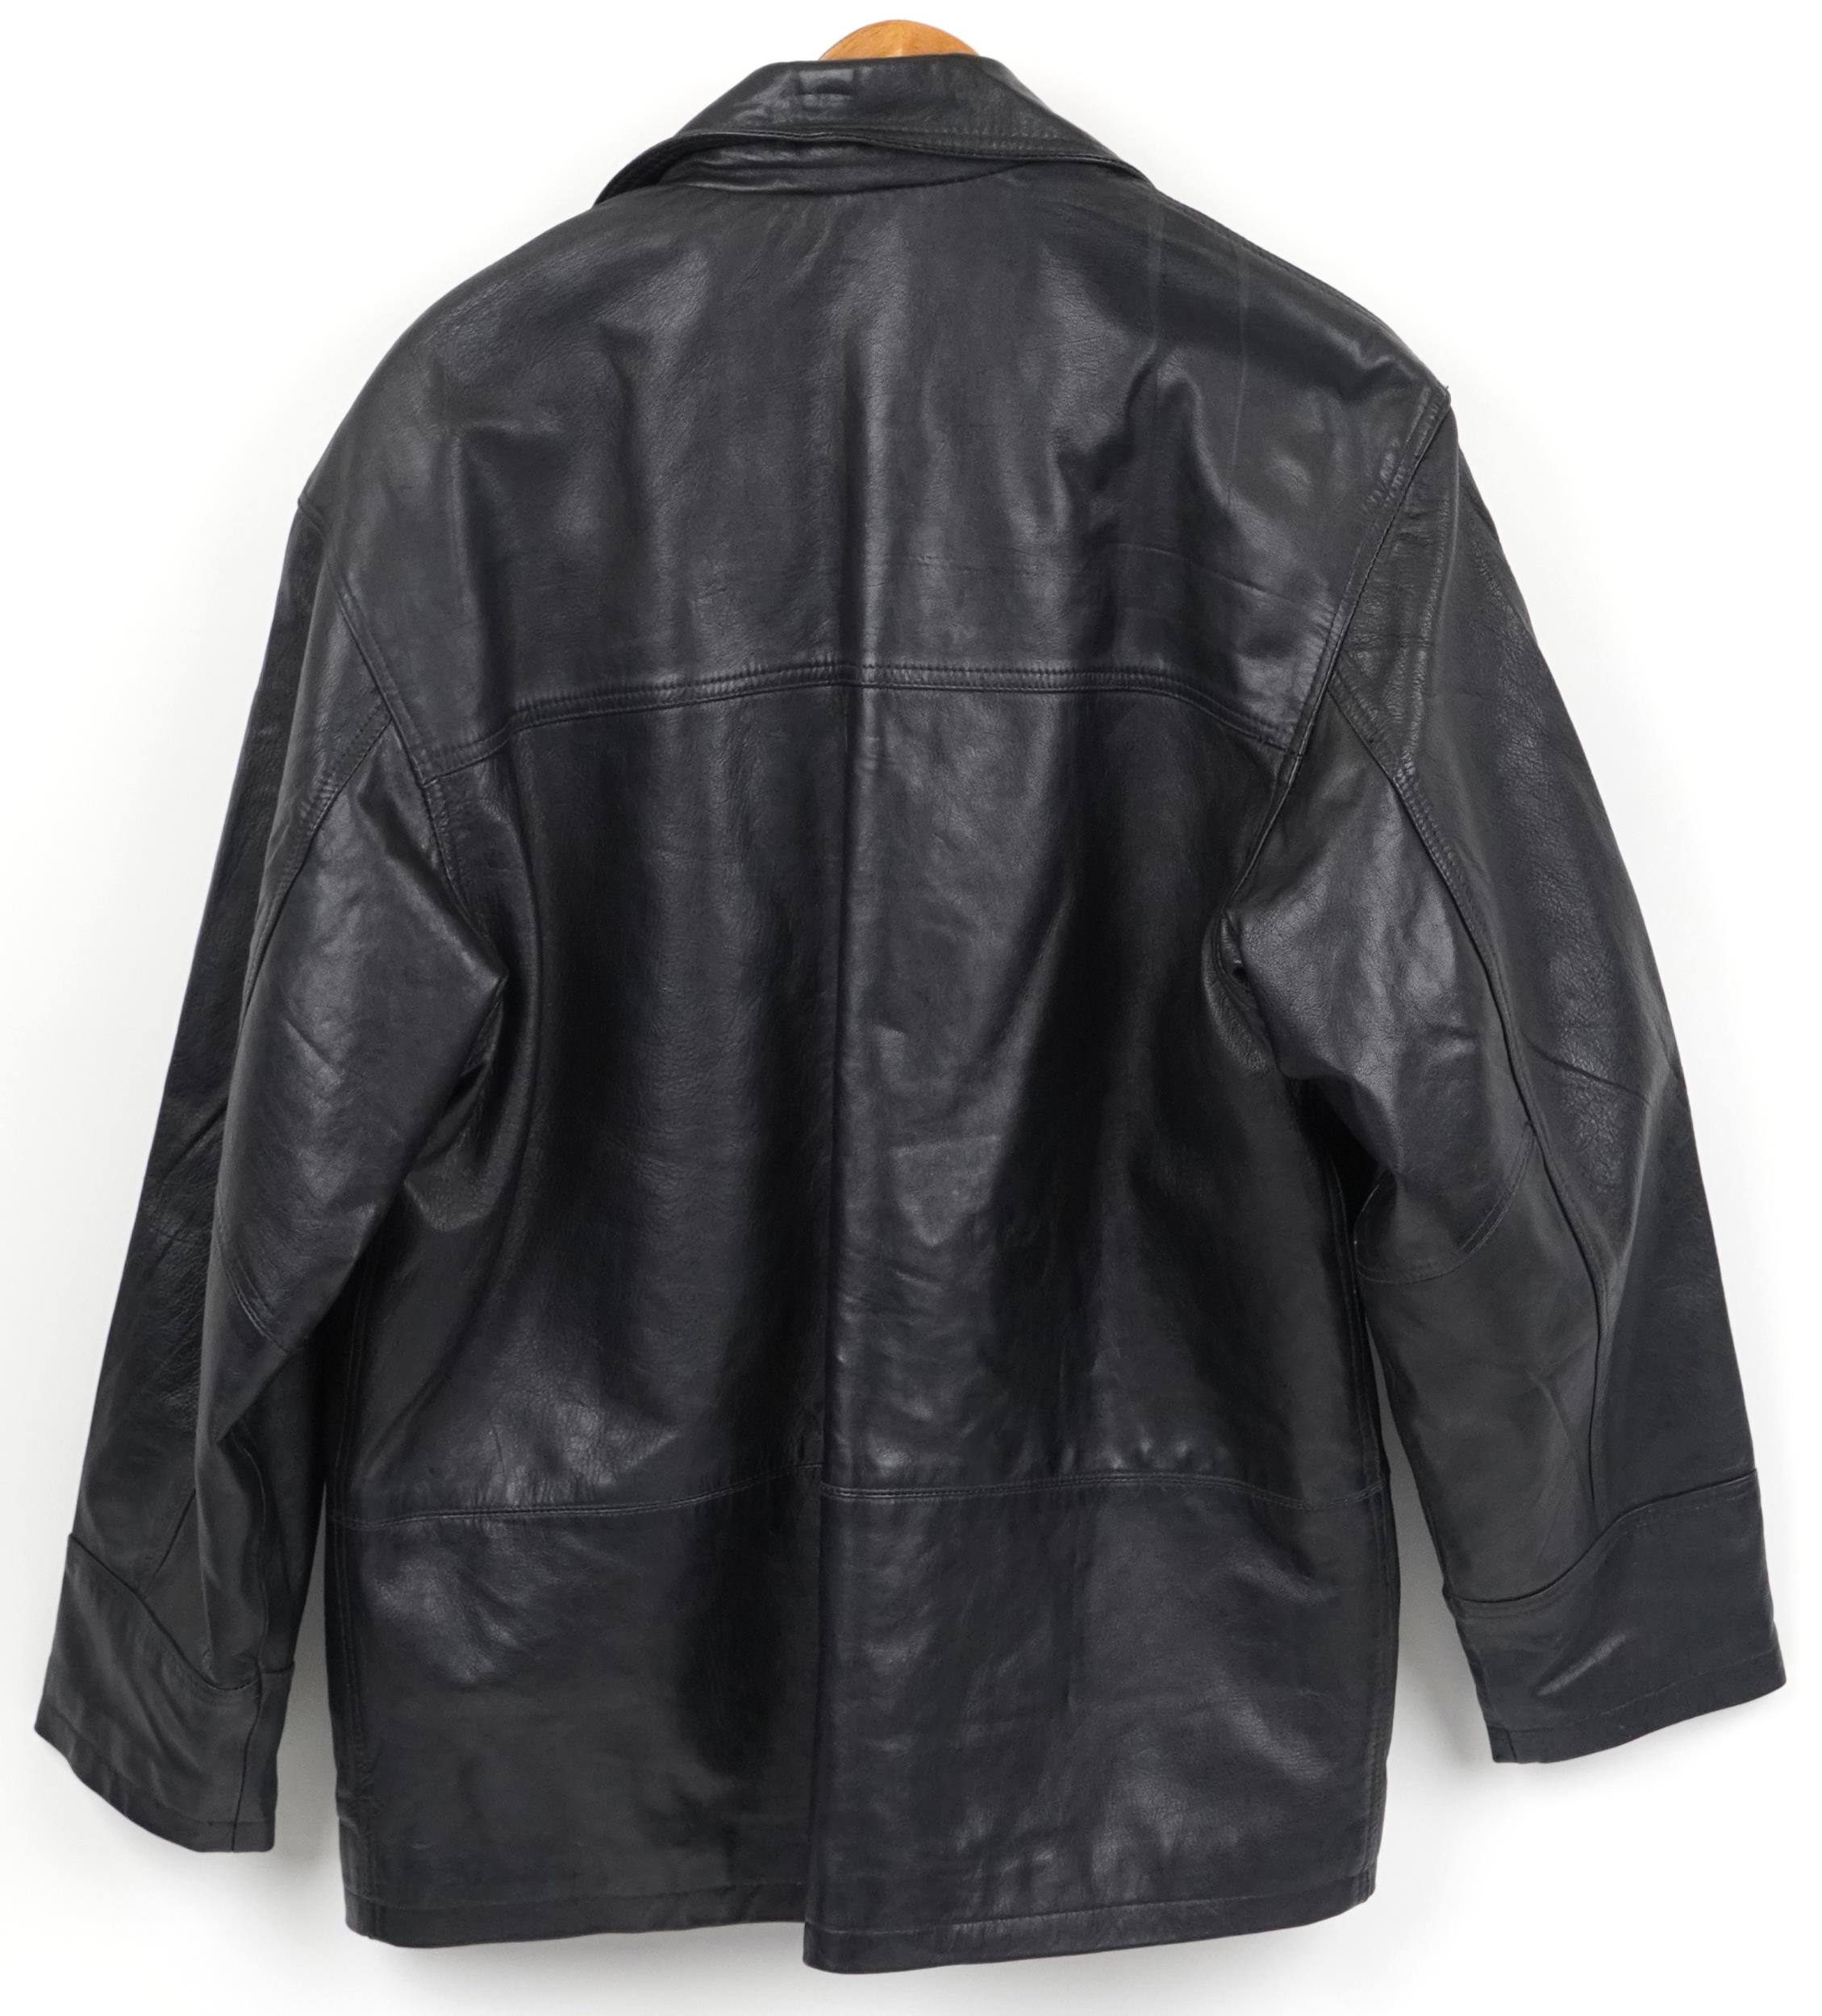 Gentlemen's Ironsides leather coat, size Medium - Image 3 of 3